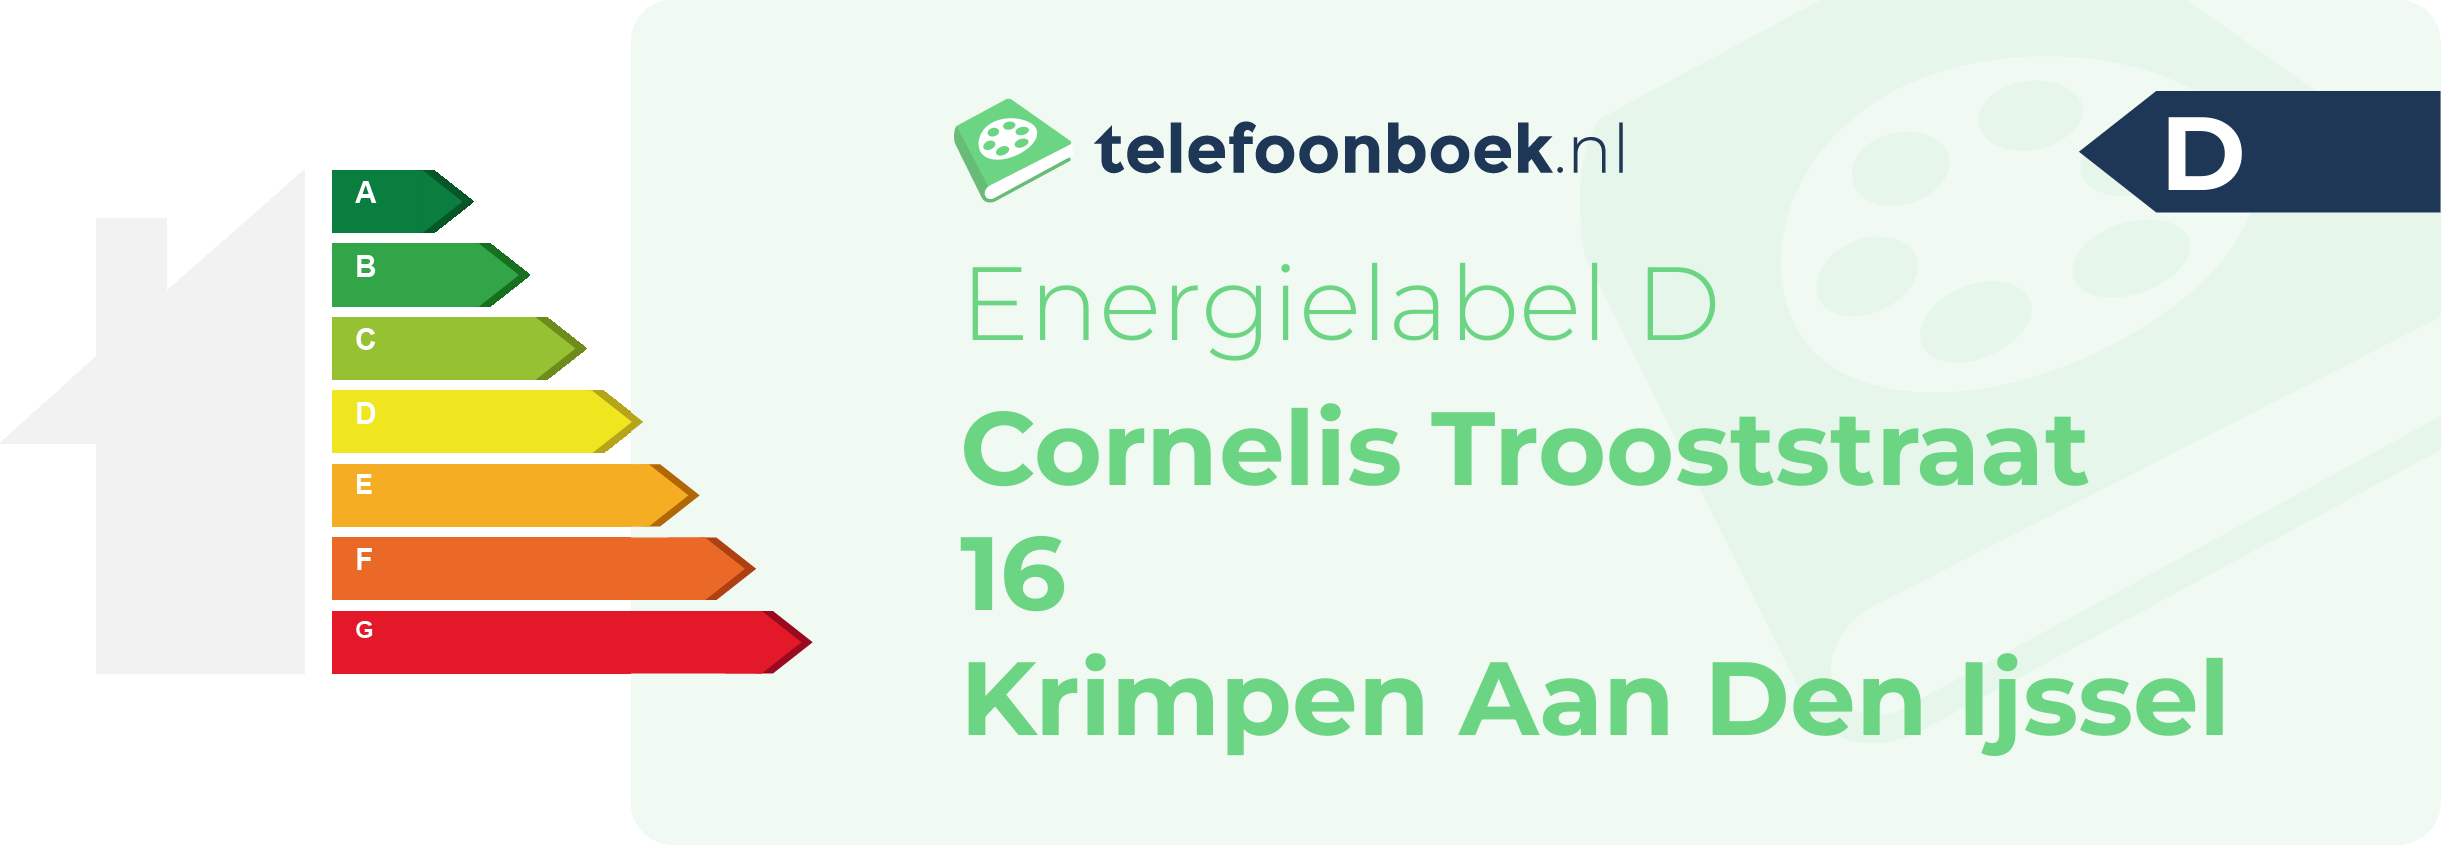 Energielabel Cornelis Trooststraat 16 Krimpen Aan Den Ijssel